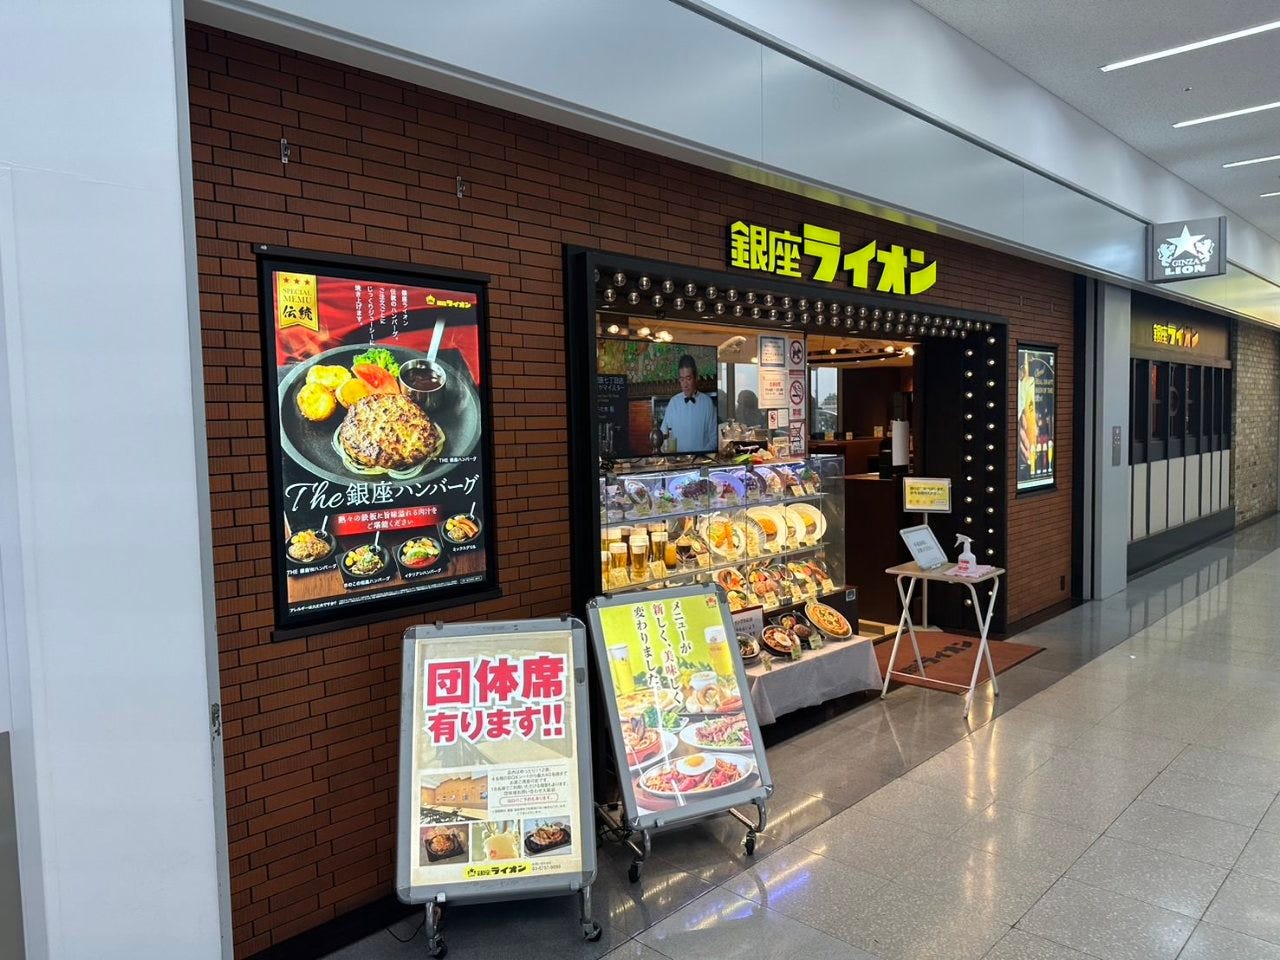 銀座ライオン 羽田空港店